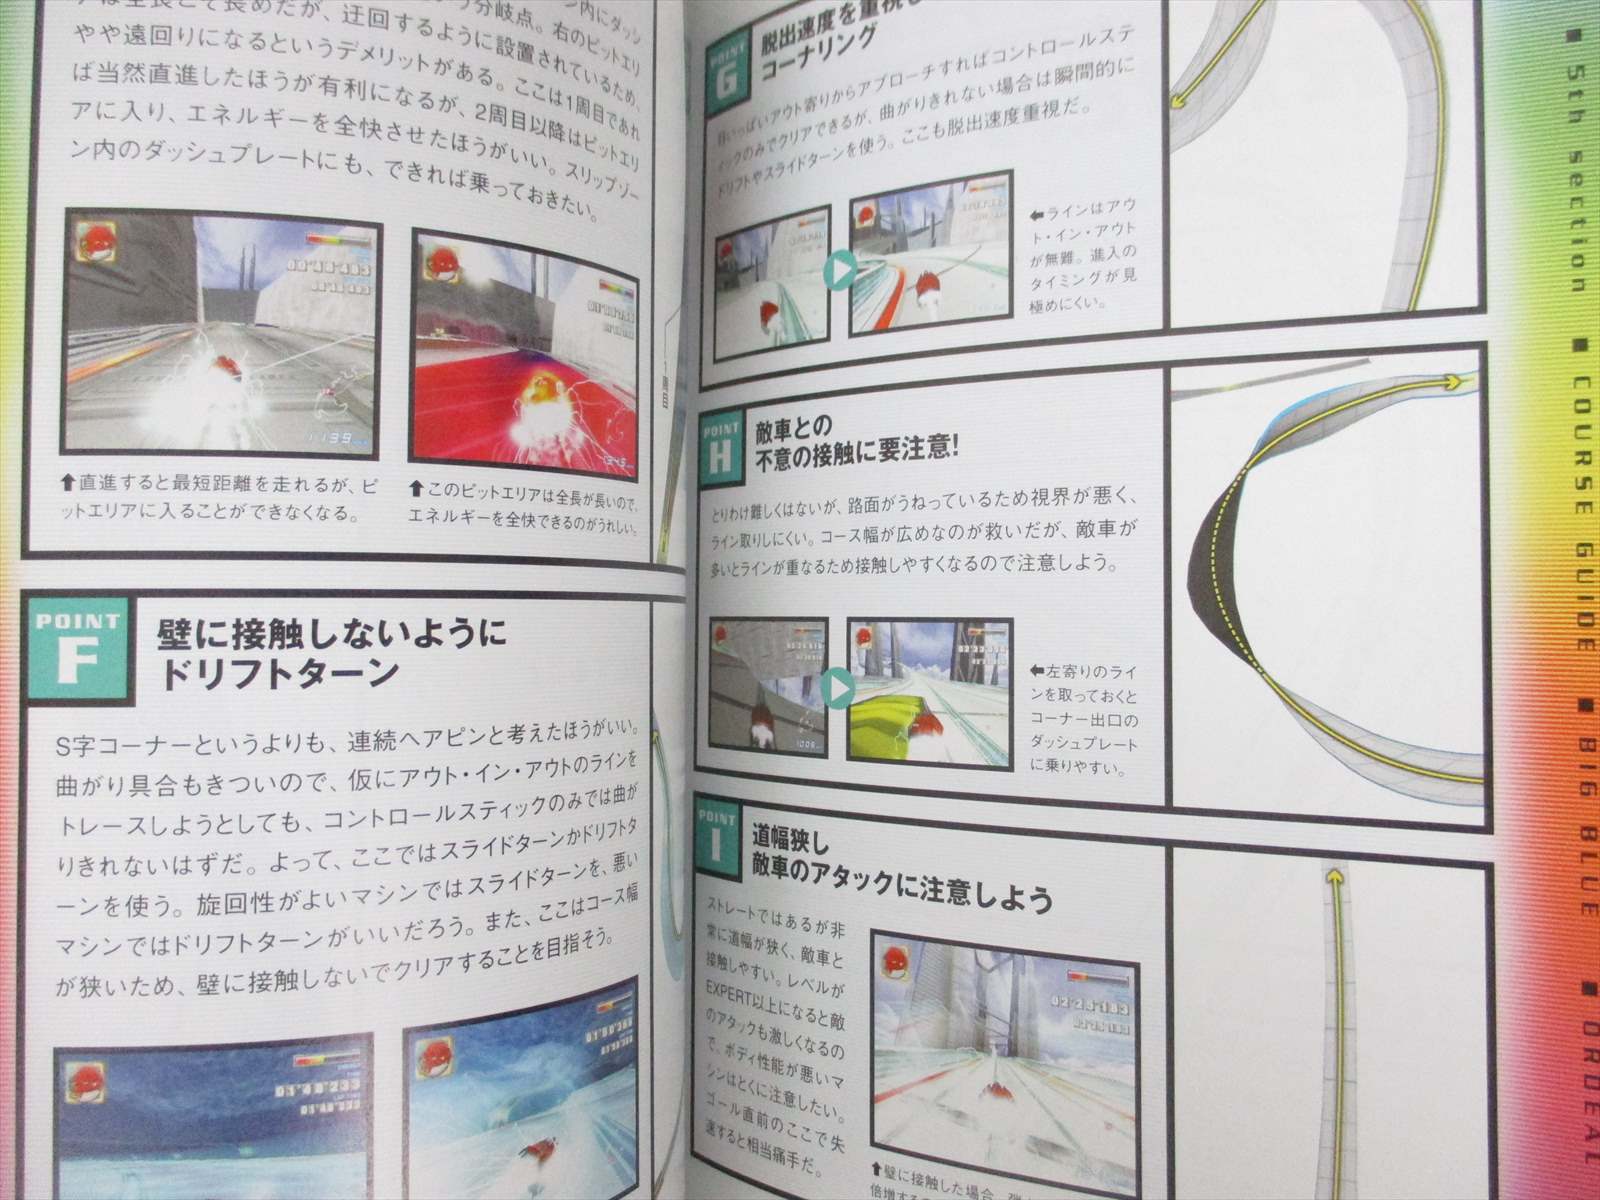 F Zero Gx Ax Complete Guide Nintendo Game Cube 03 Book Eb51 Ebay